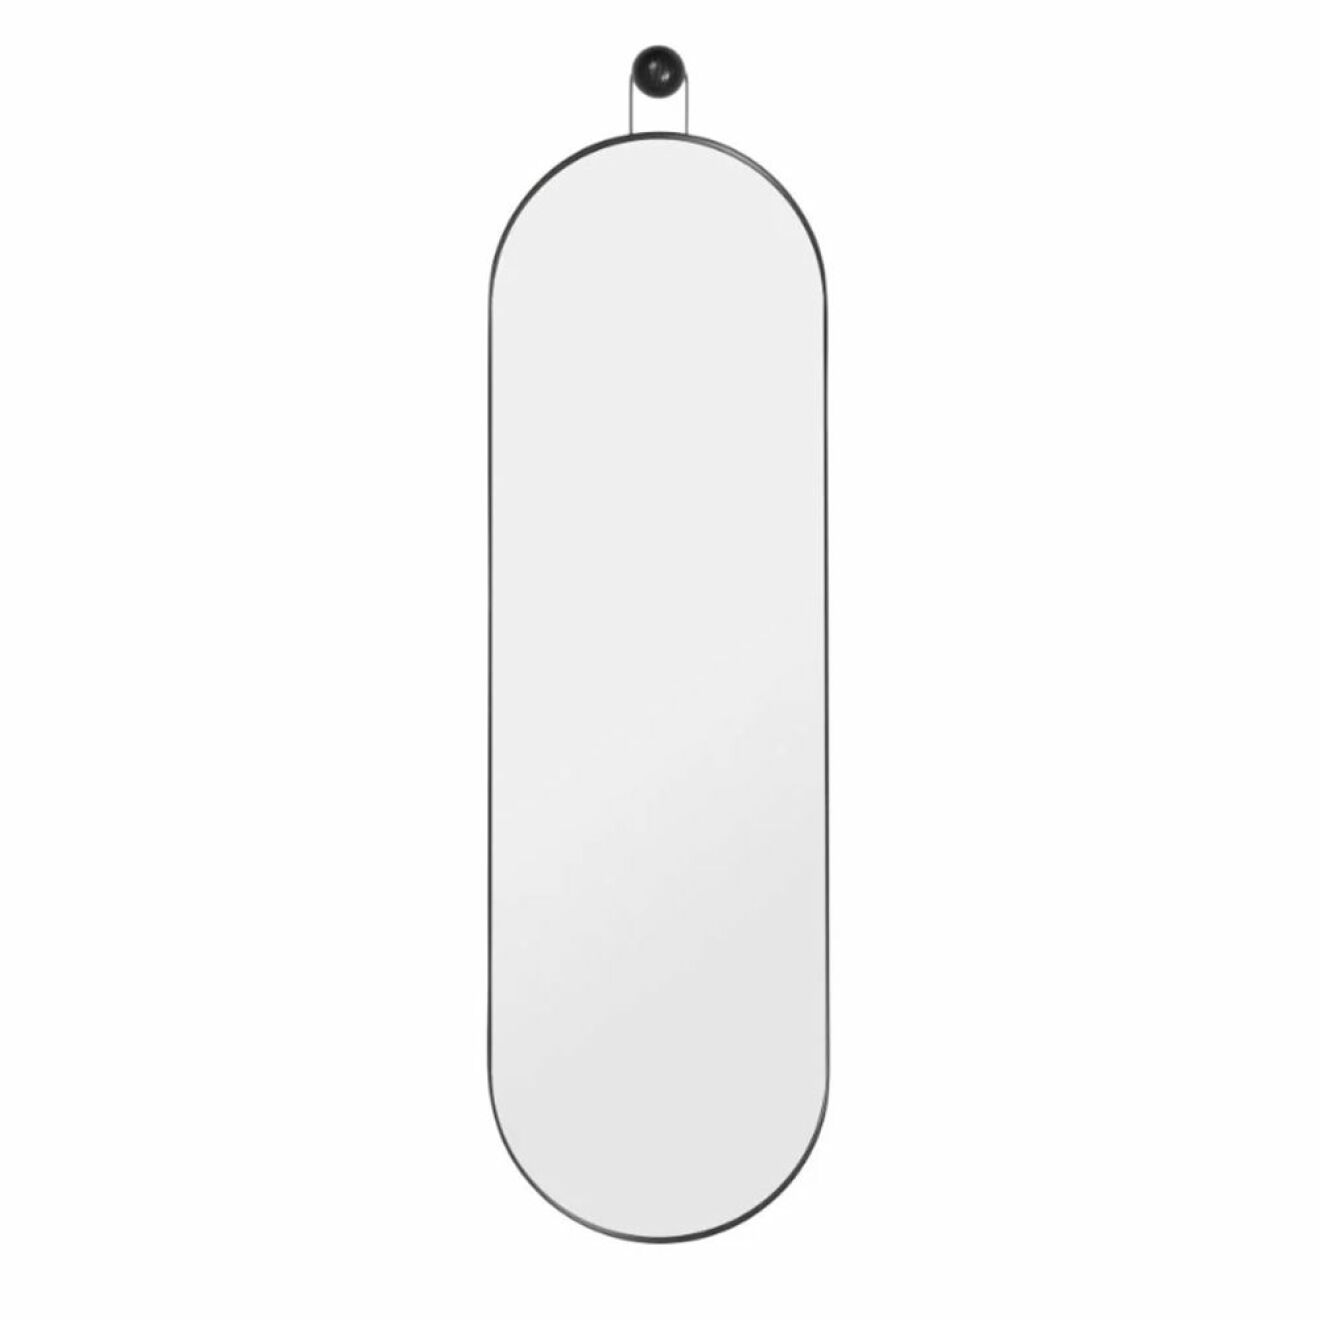 Oval spegel med svart ram från Ferm Living